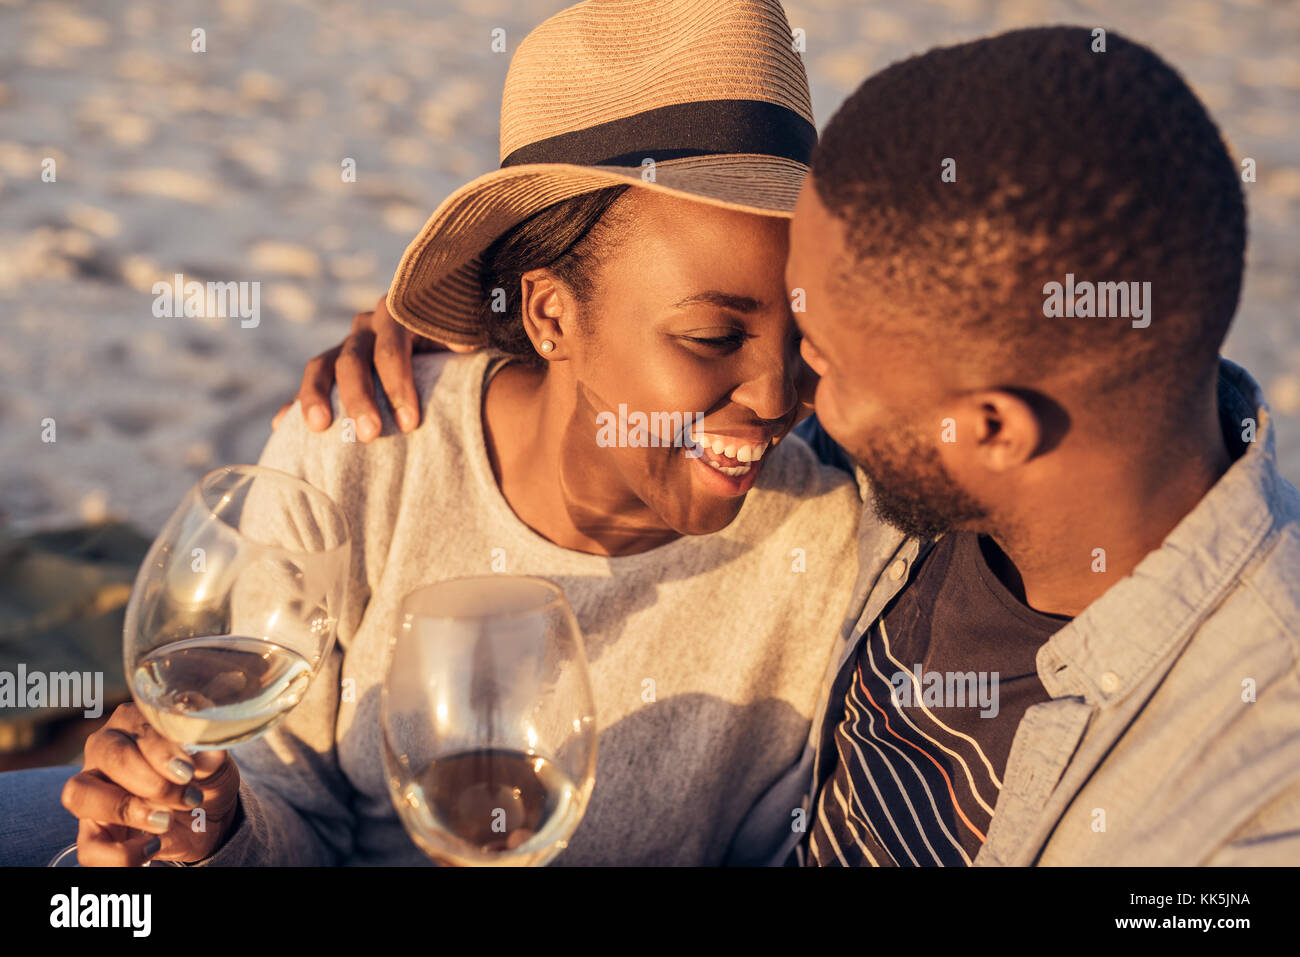 Romantico giovane africano giovane bevendo vino insieme in spiaggia Foto Stock